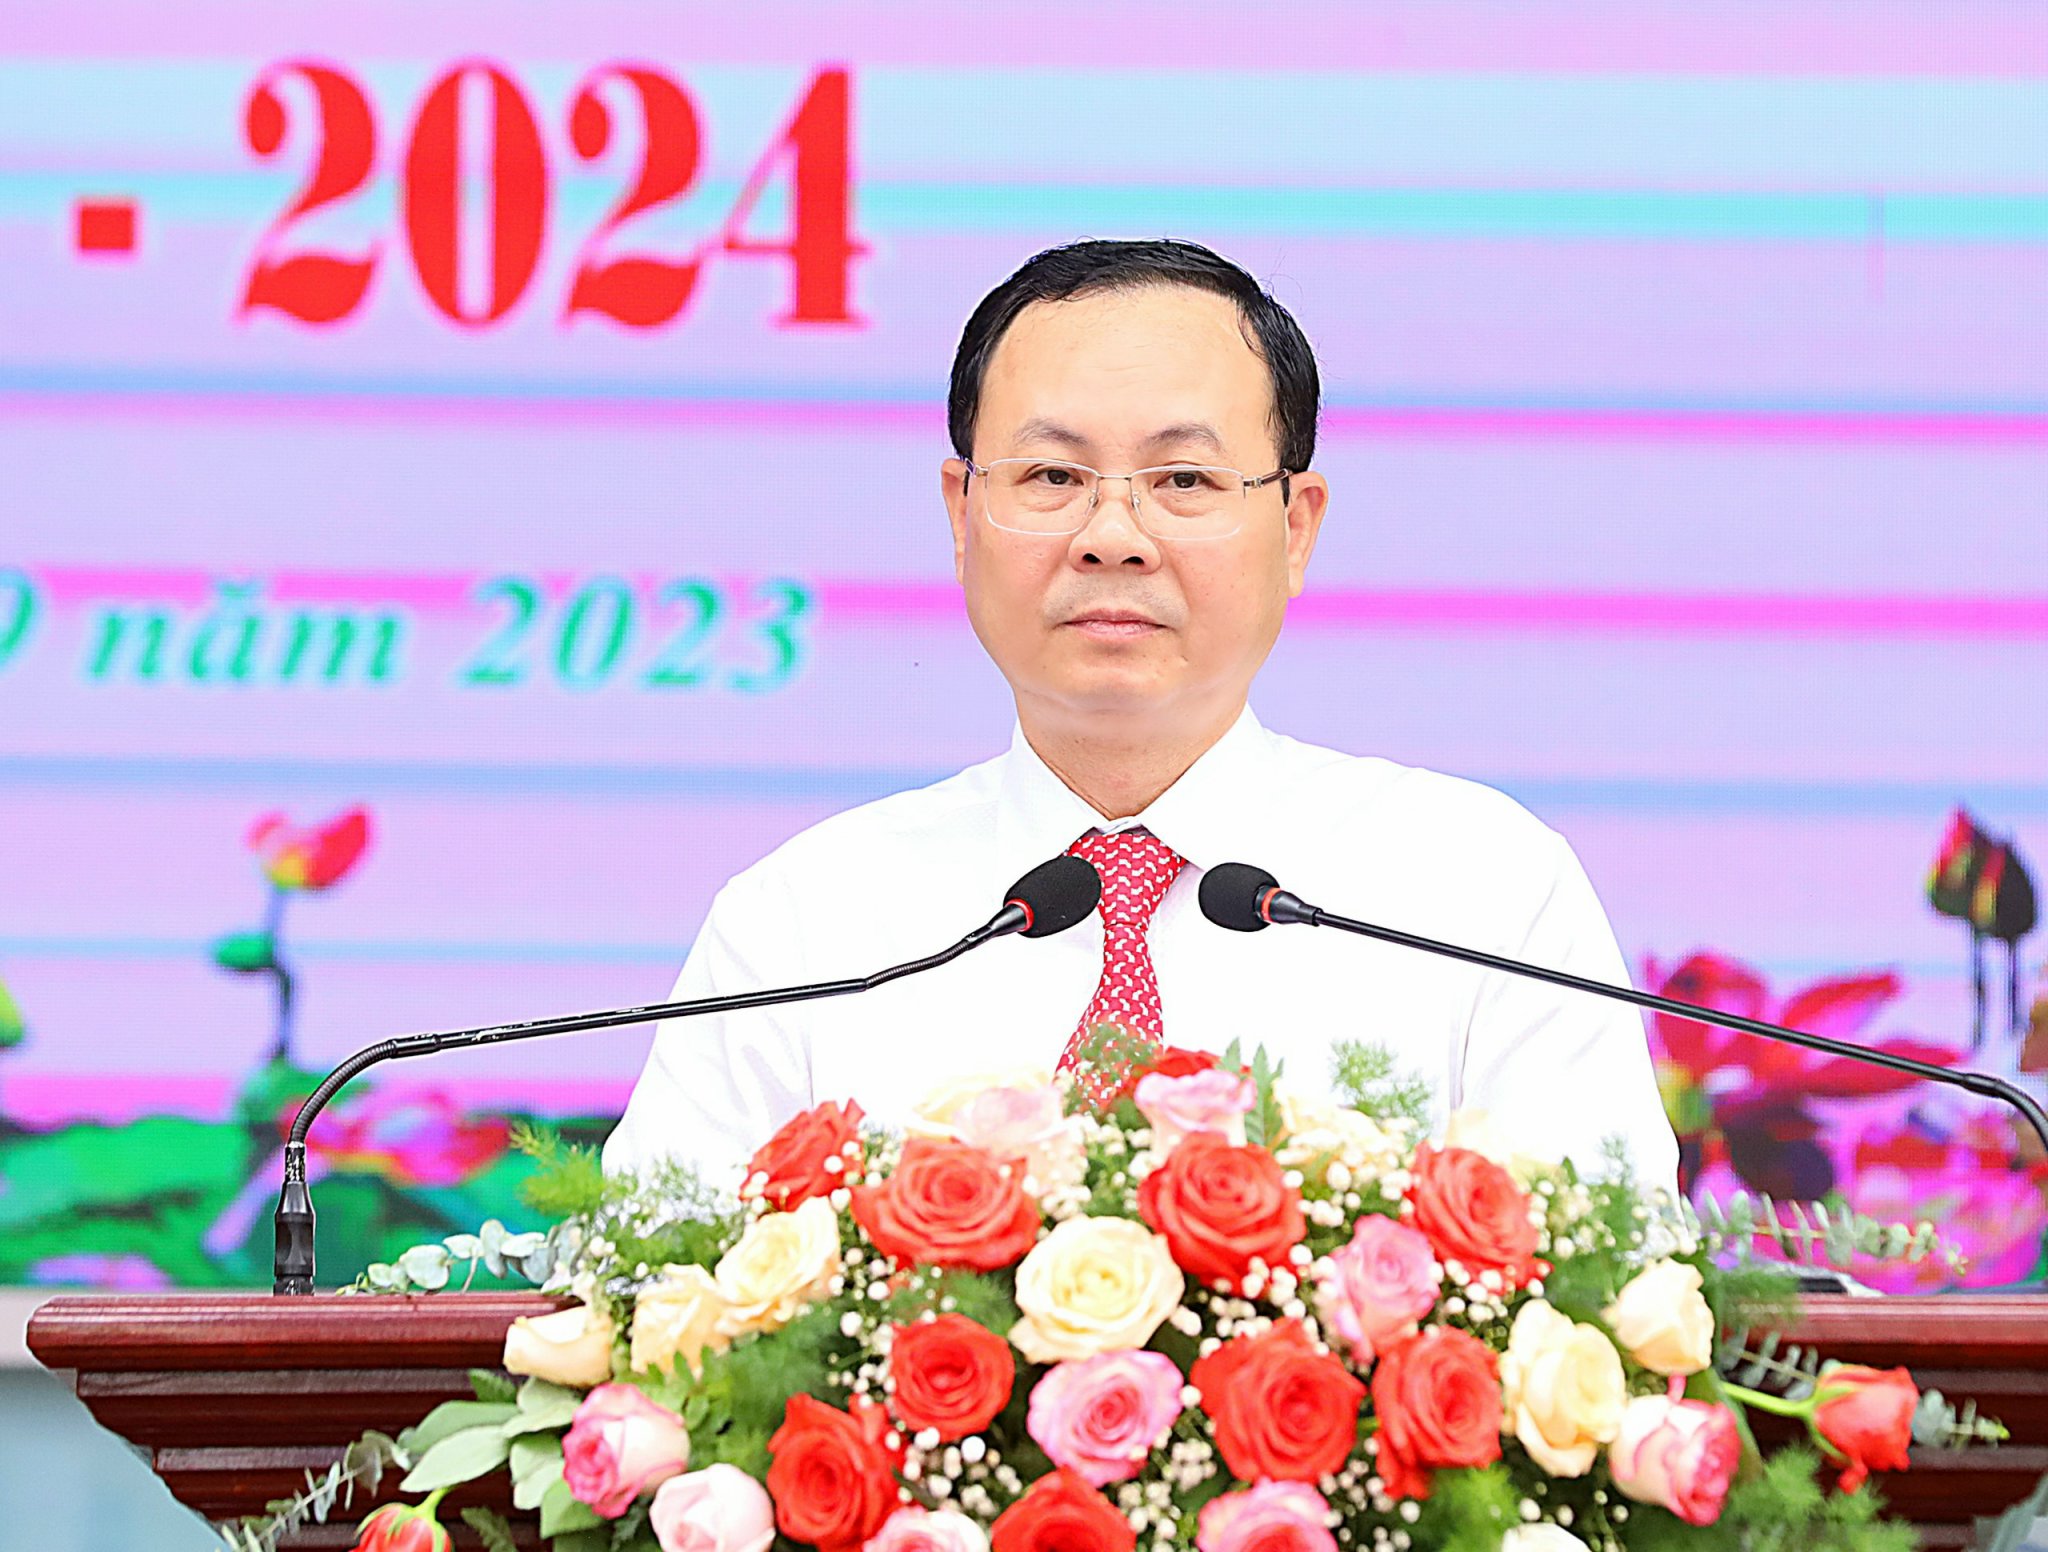 Ông Nguyễn Văn Hiếu - Bí thư Thành ủy Cần Thơ đọc Thư của Chủ tịch nước Võ Văn Thưởng gửi ngành Giáo dục nhân dịp Khai giảng năm học mới 2023 - 2024.